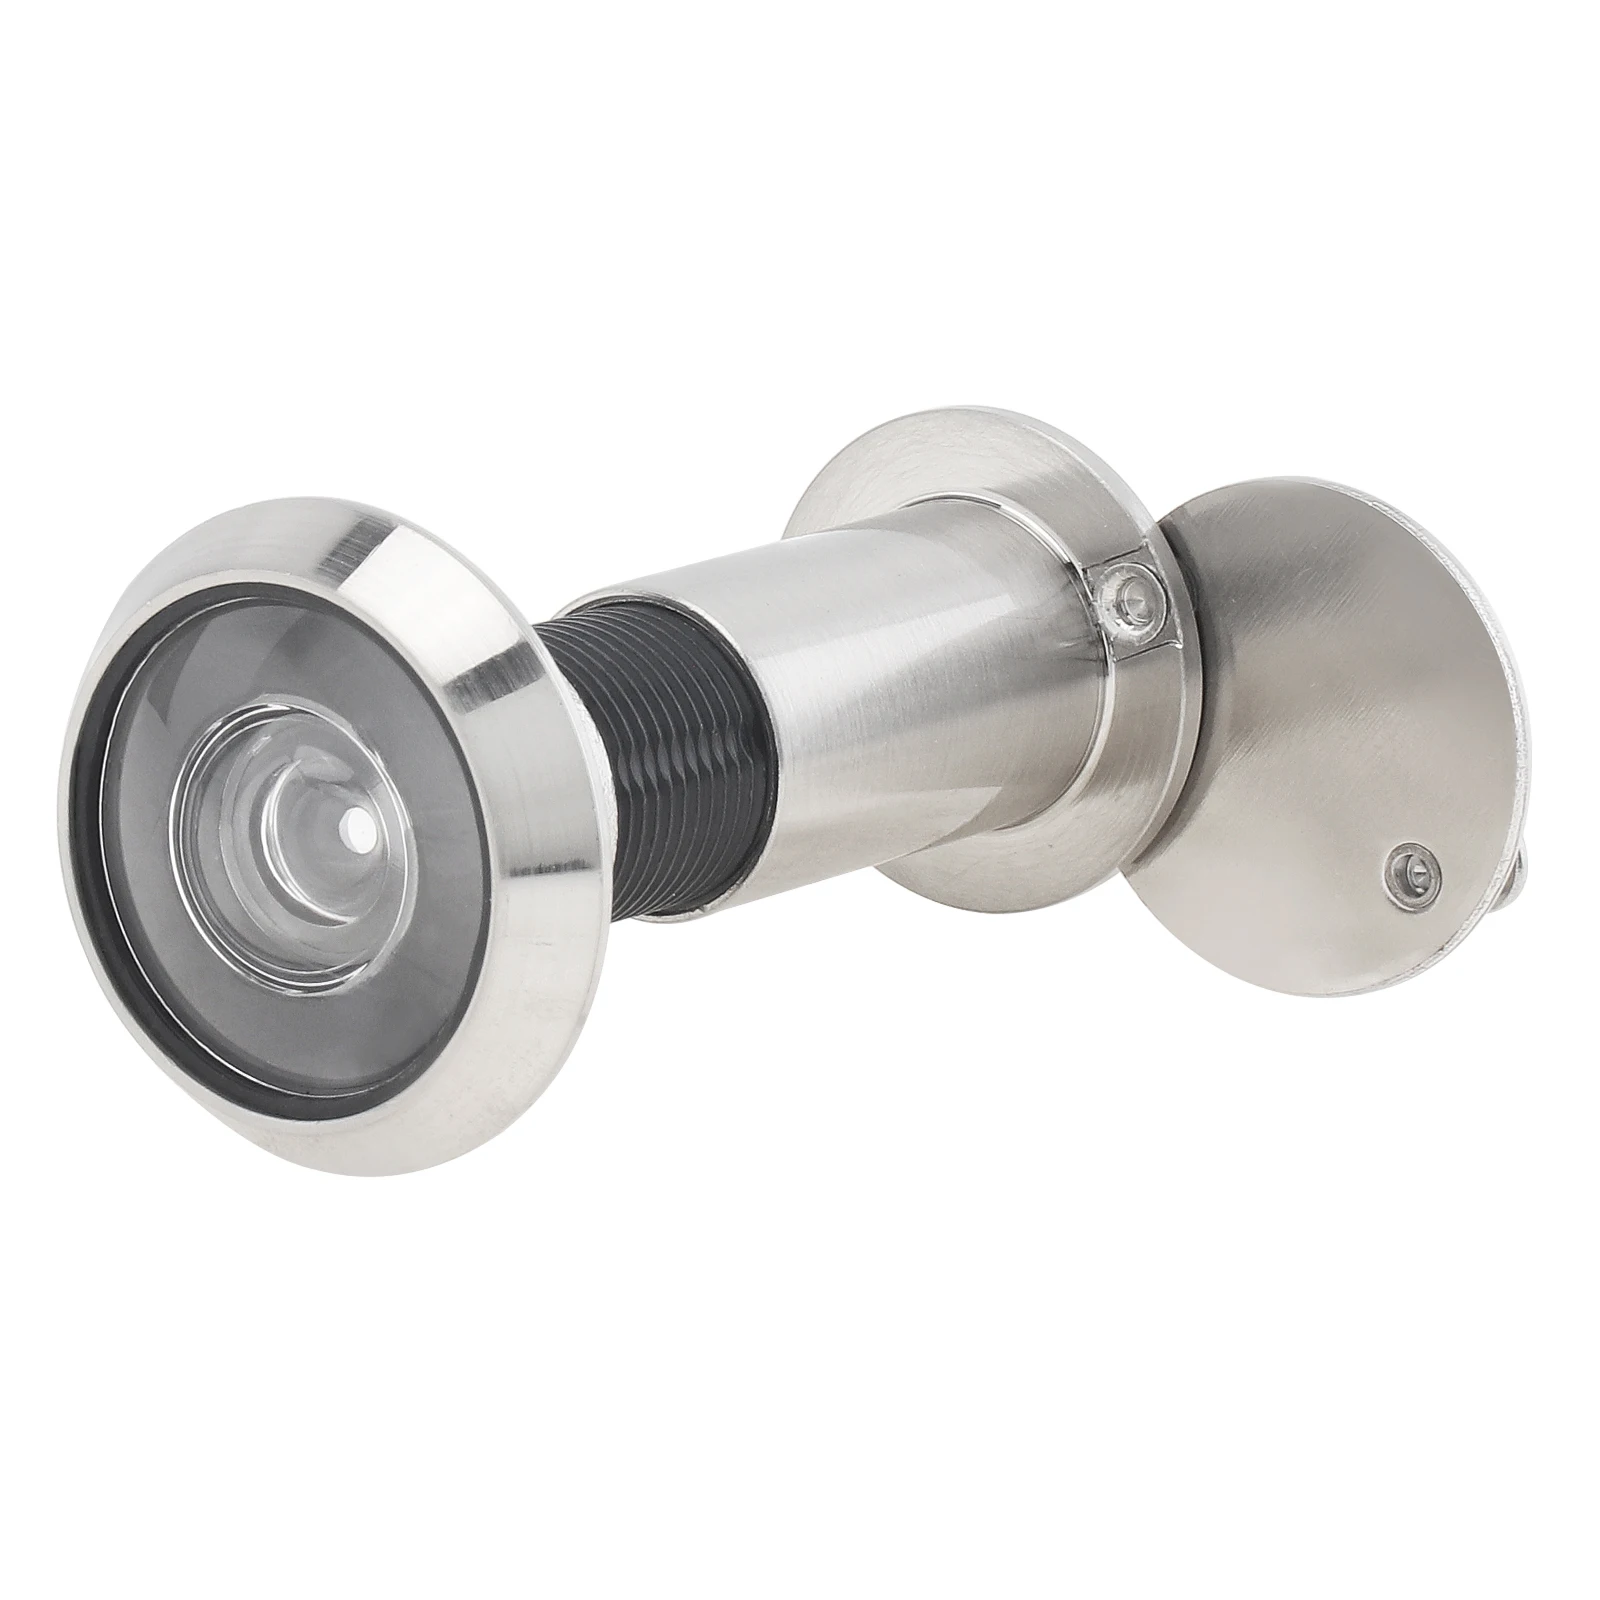 200 Degree Door Viewer Peephole Brushed Nickel Security Peek Peep Holes for 40-65mm / 1.57-2.56inch Doors Thickness